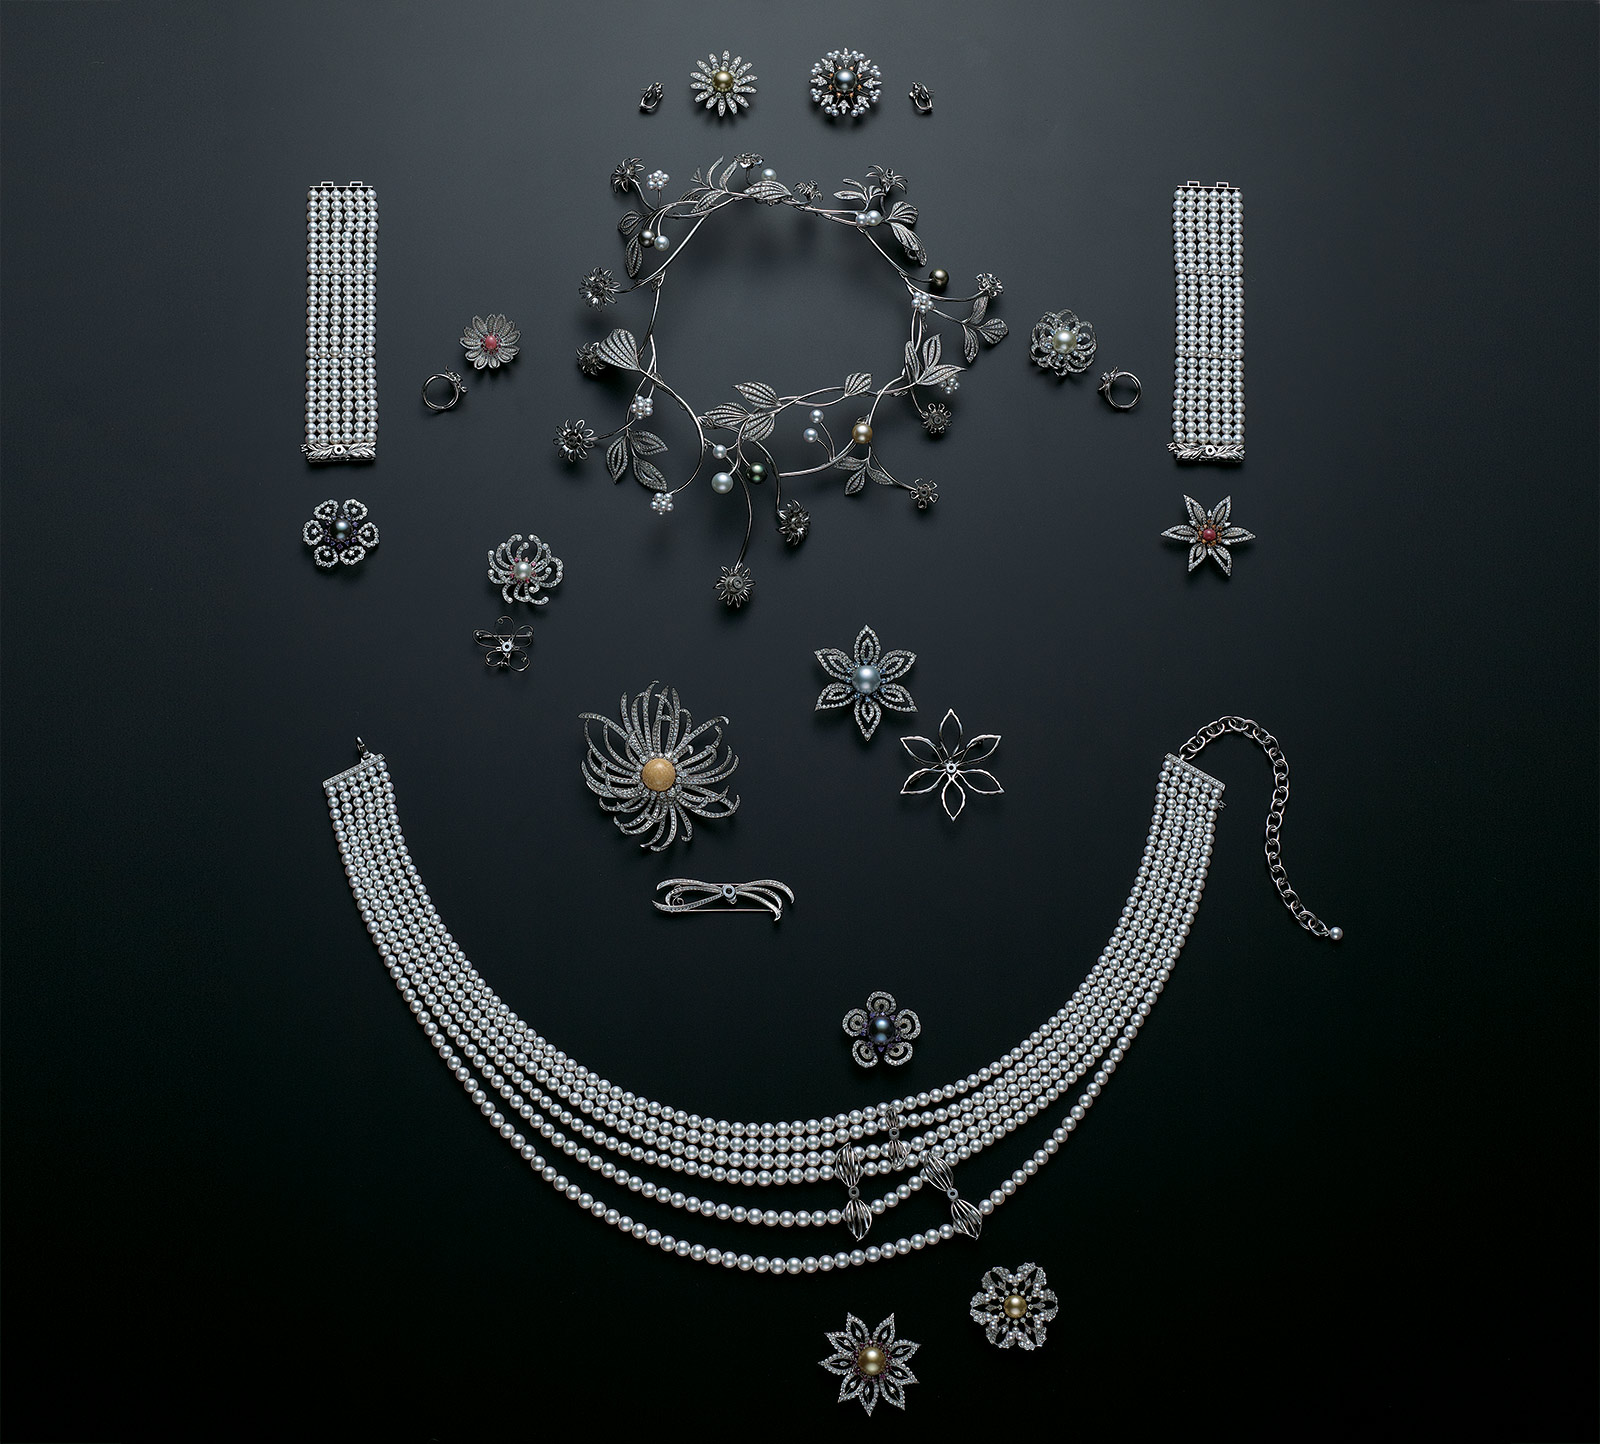 В Mikimoto создали сложное многофункциональное украшение - корону Dreams & Pearls, трансформирующуюся в в потрясающее ожерелье, а каждый цветок можно снять, чтобы создать набор серег, брошей и колец, прикрепить их на браслет или пояс